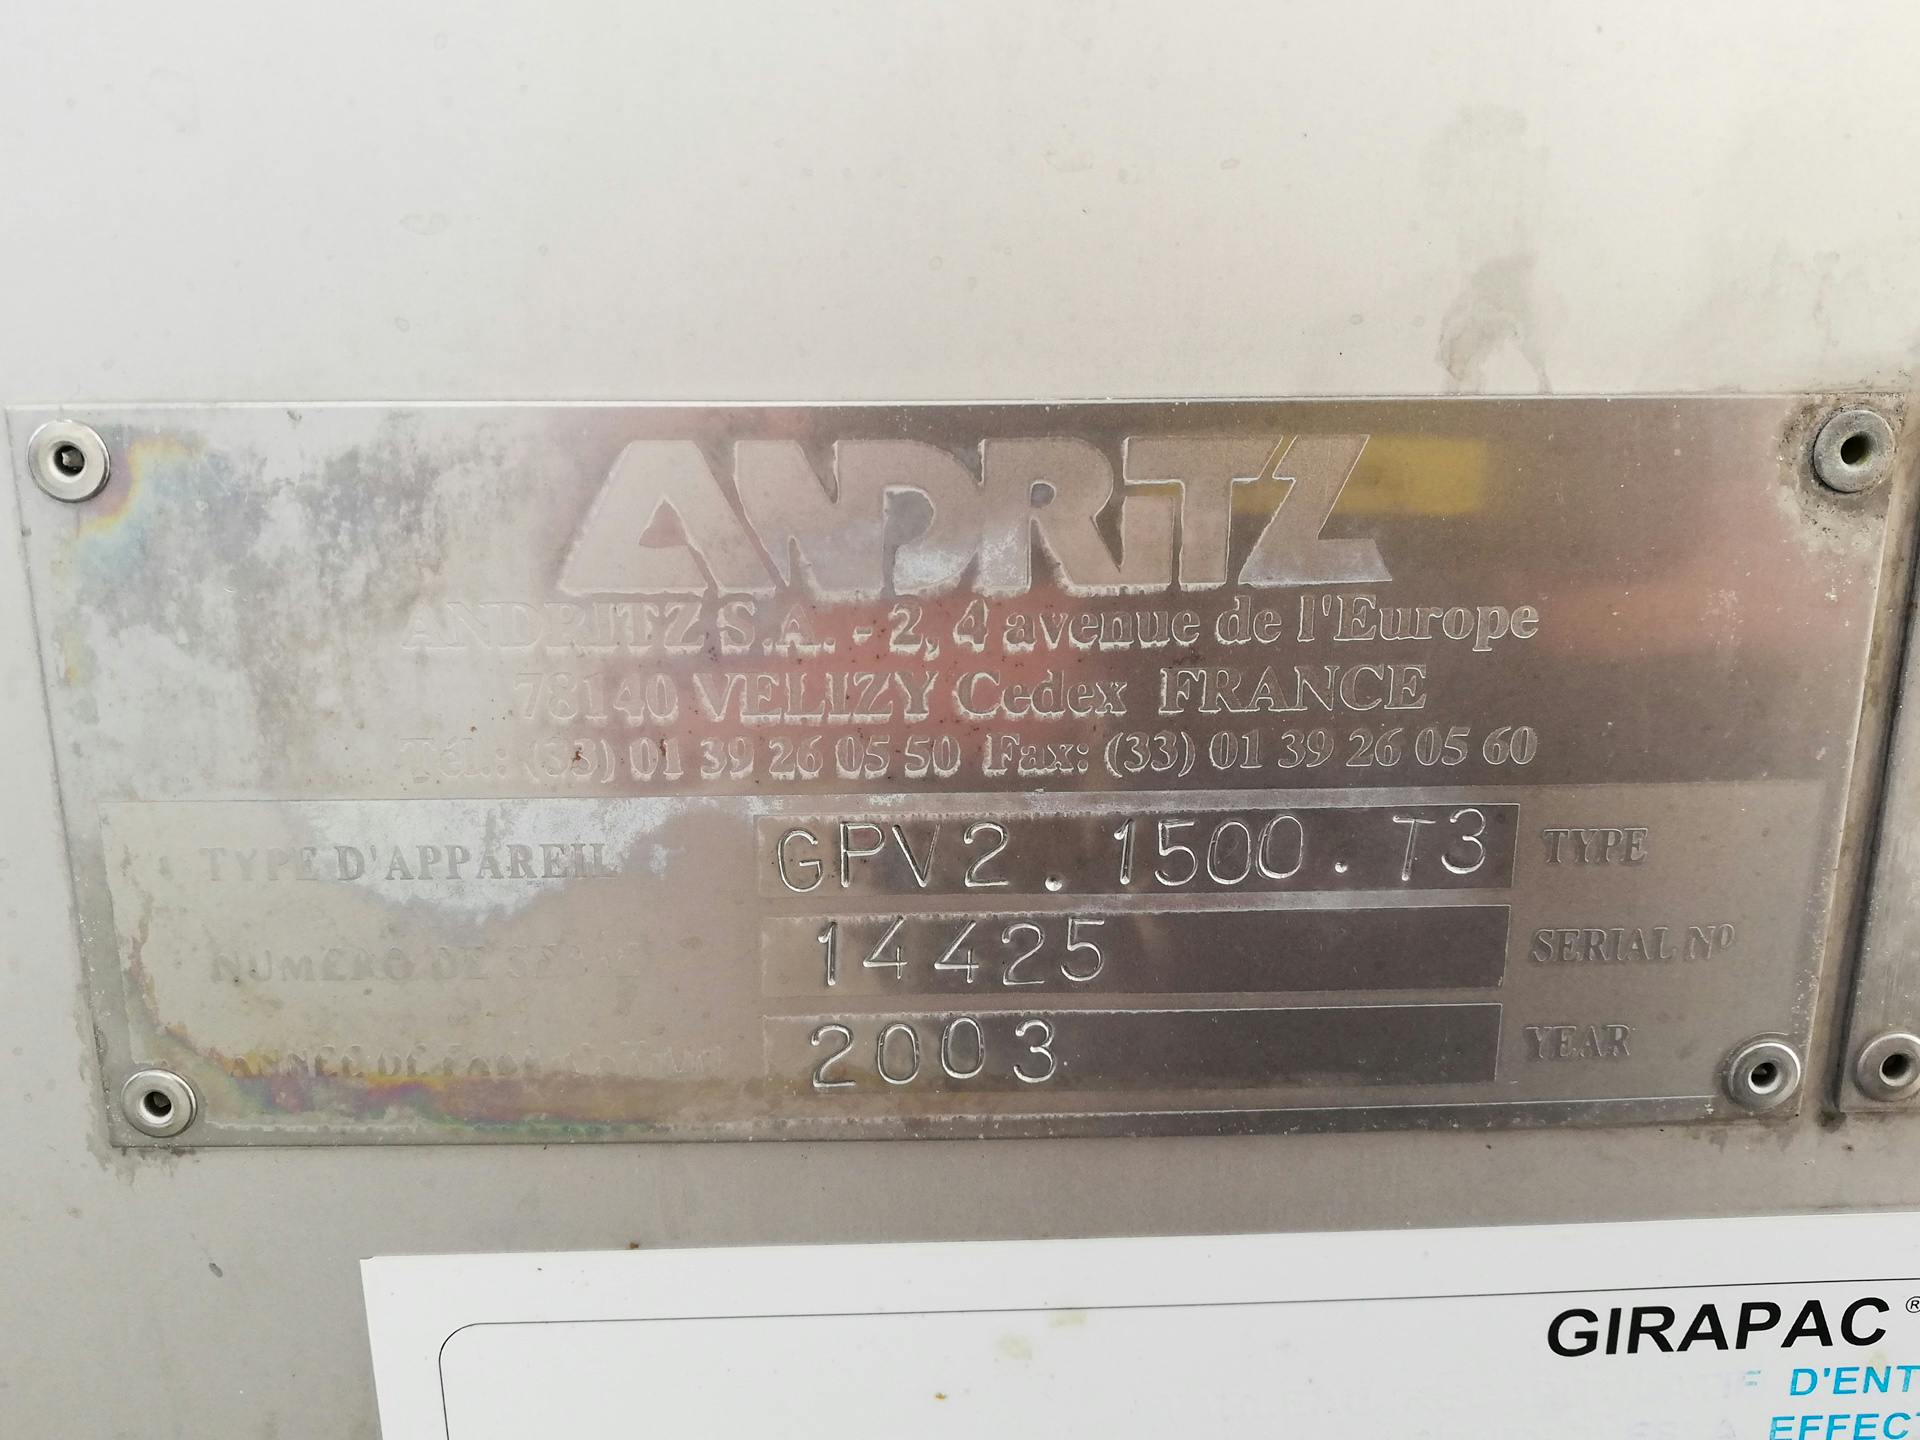 Andritz Girapac GPV2 1500 T3 - Rotating sieve - image 4